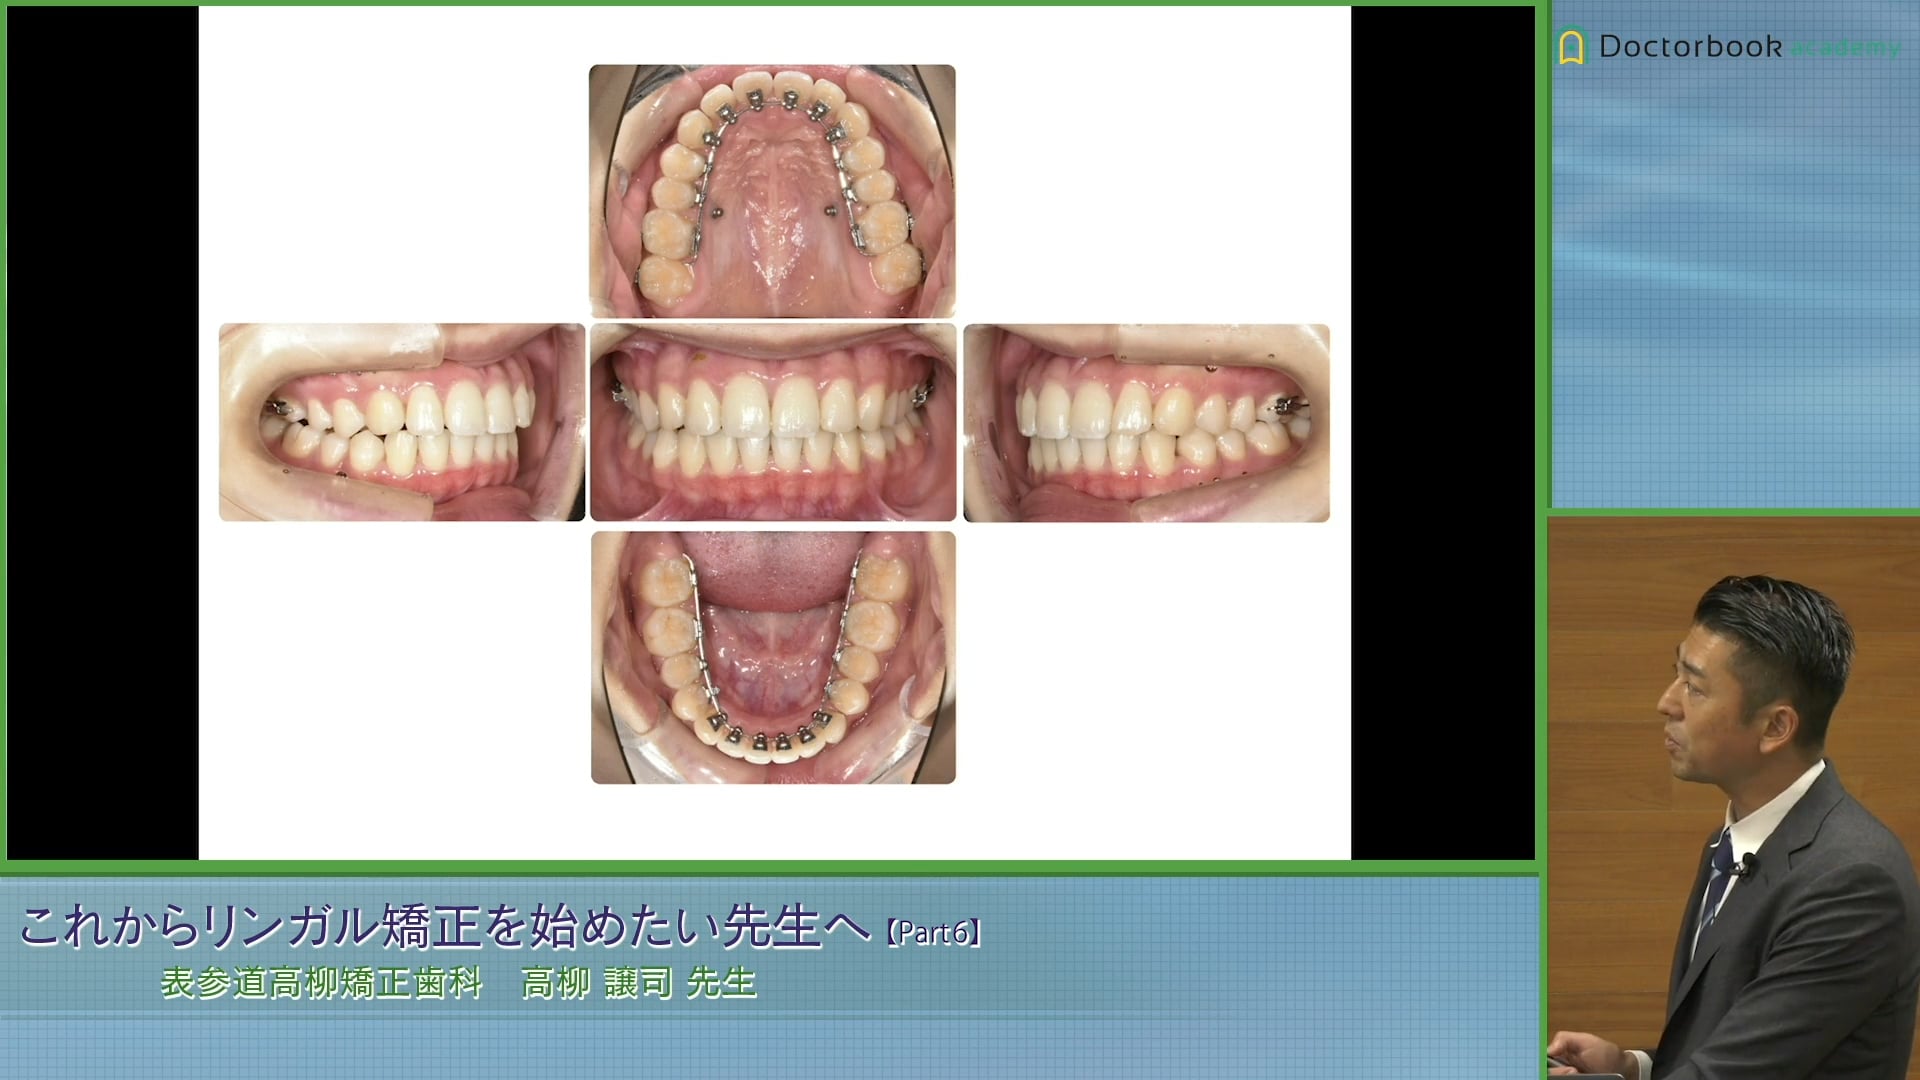 軽度の非抜歯症例、Ⅱ級上顎片顎抜歯症例 #6